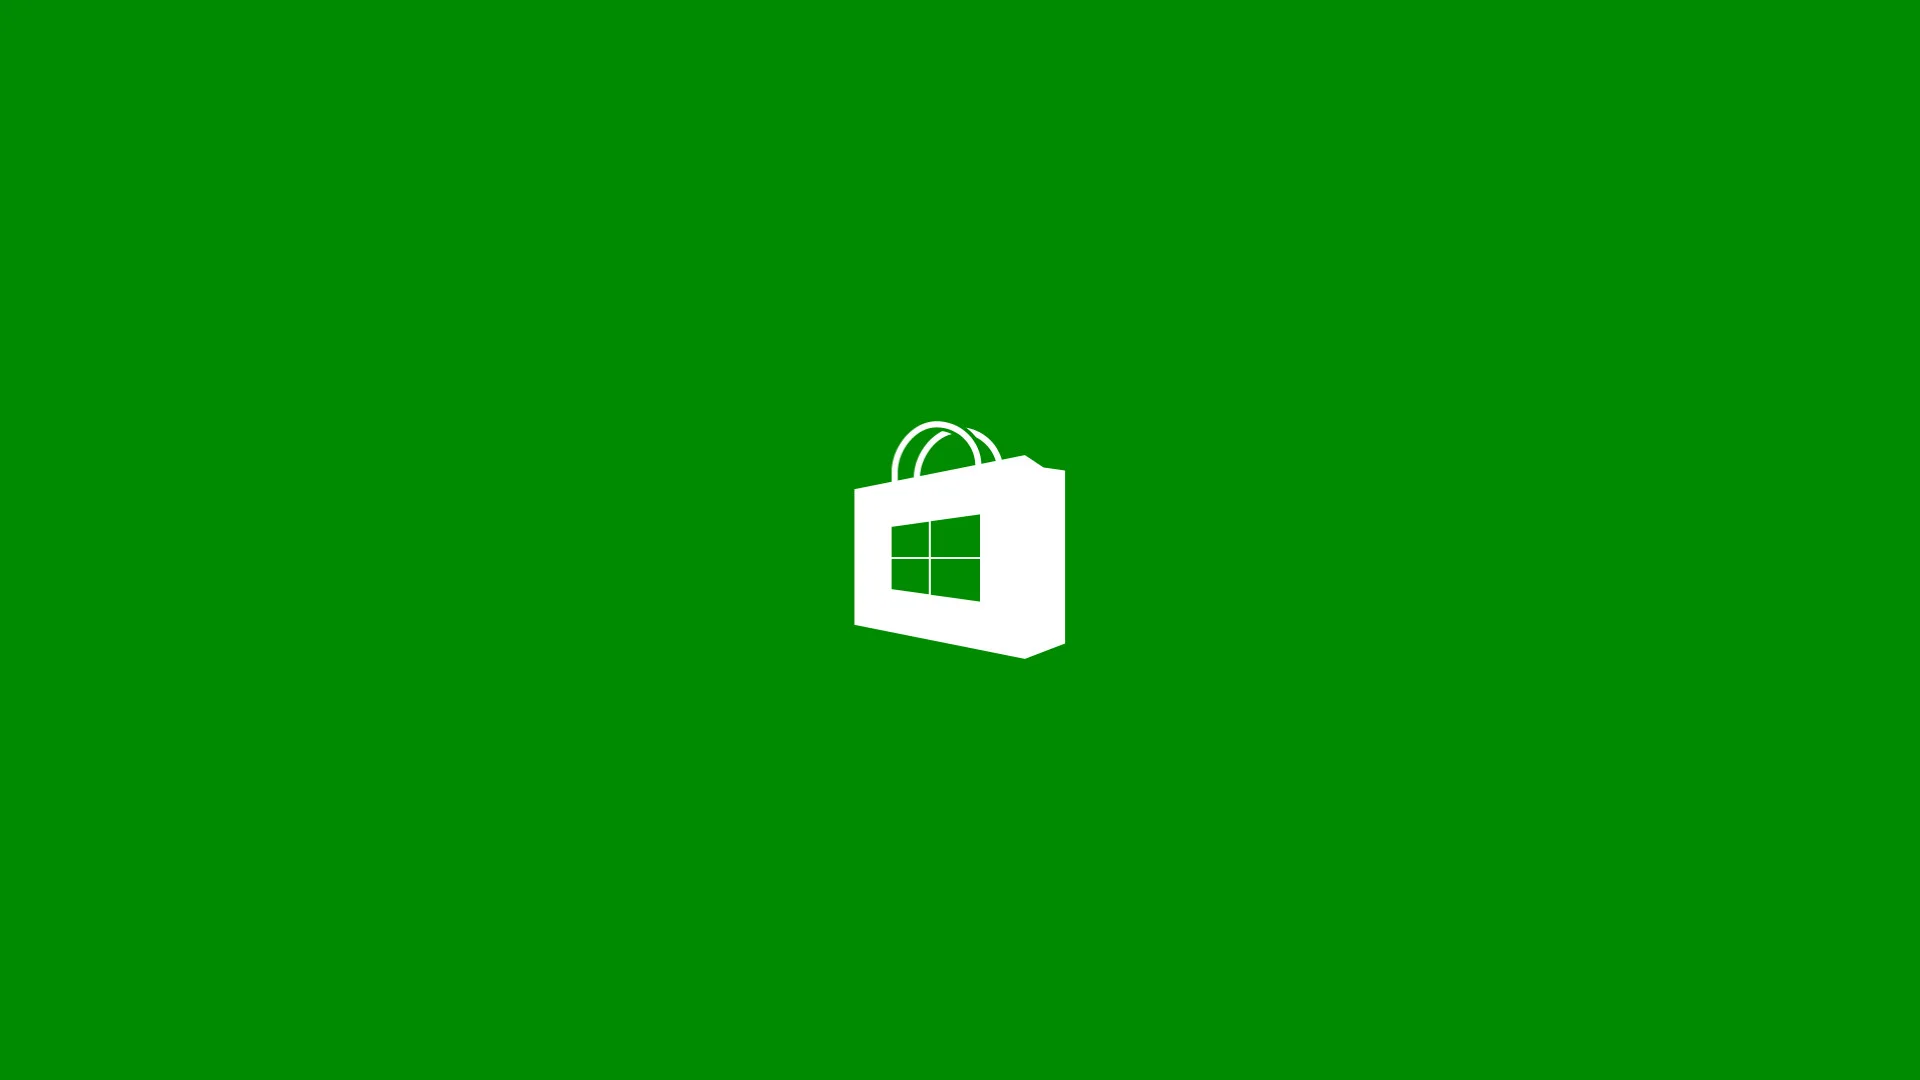 Microsoft: 10 принципов Windows 10 как свободной и справедливой платформы - фото 2